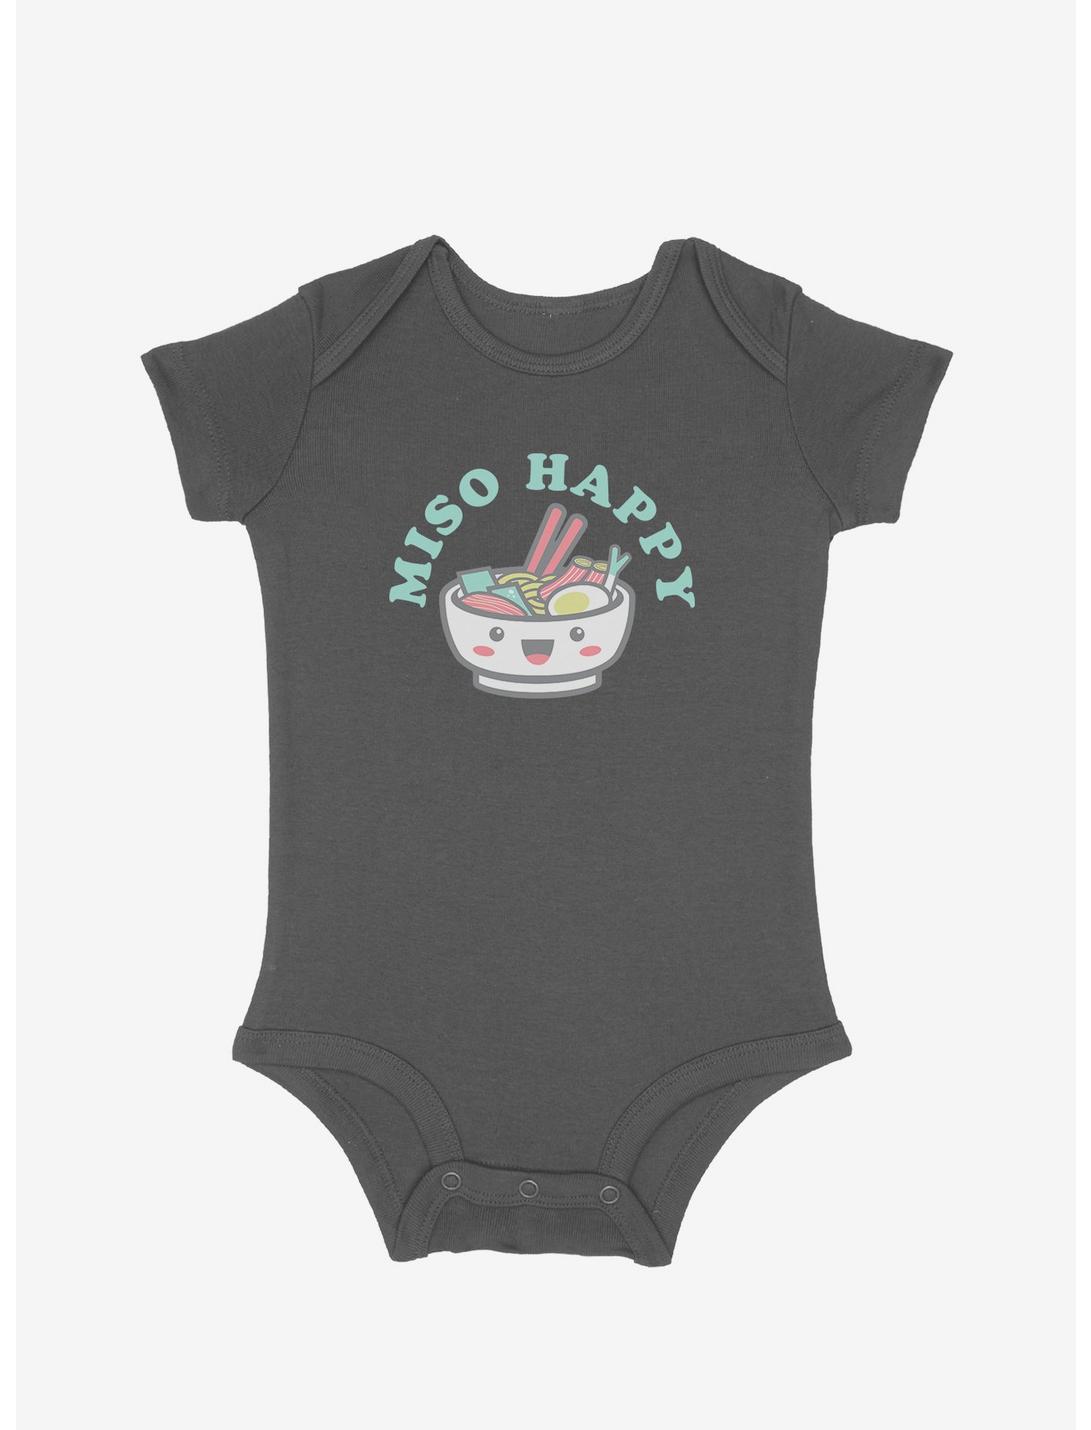 Miso Happy Infant Bodysuit, GRAPHITE HEATHER, hi-res